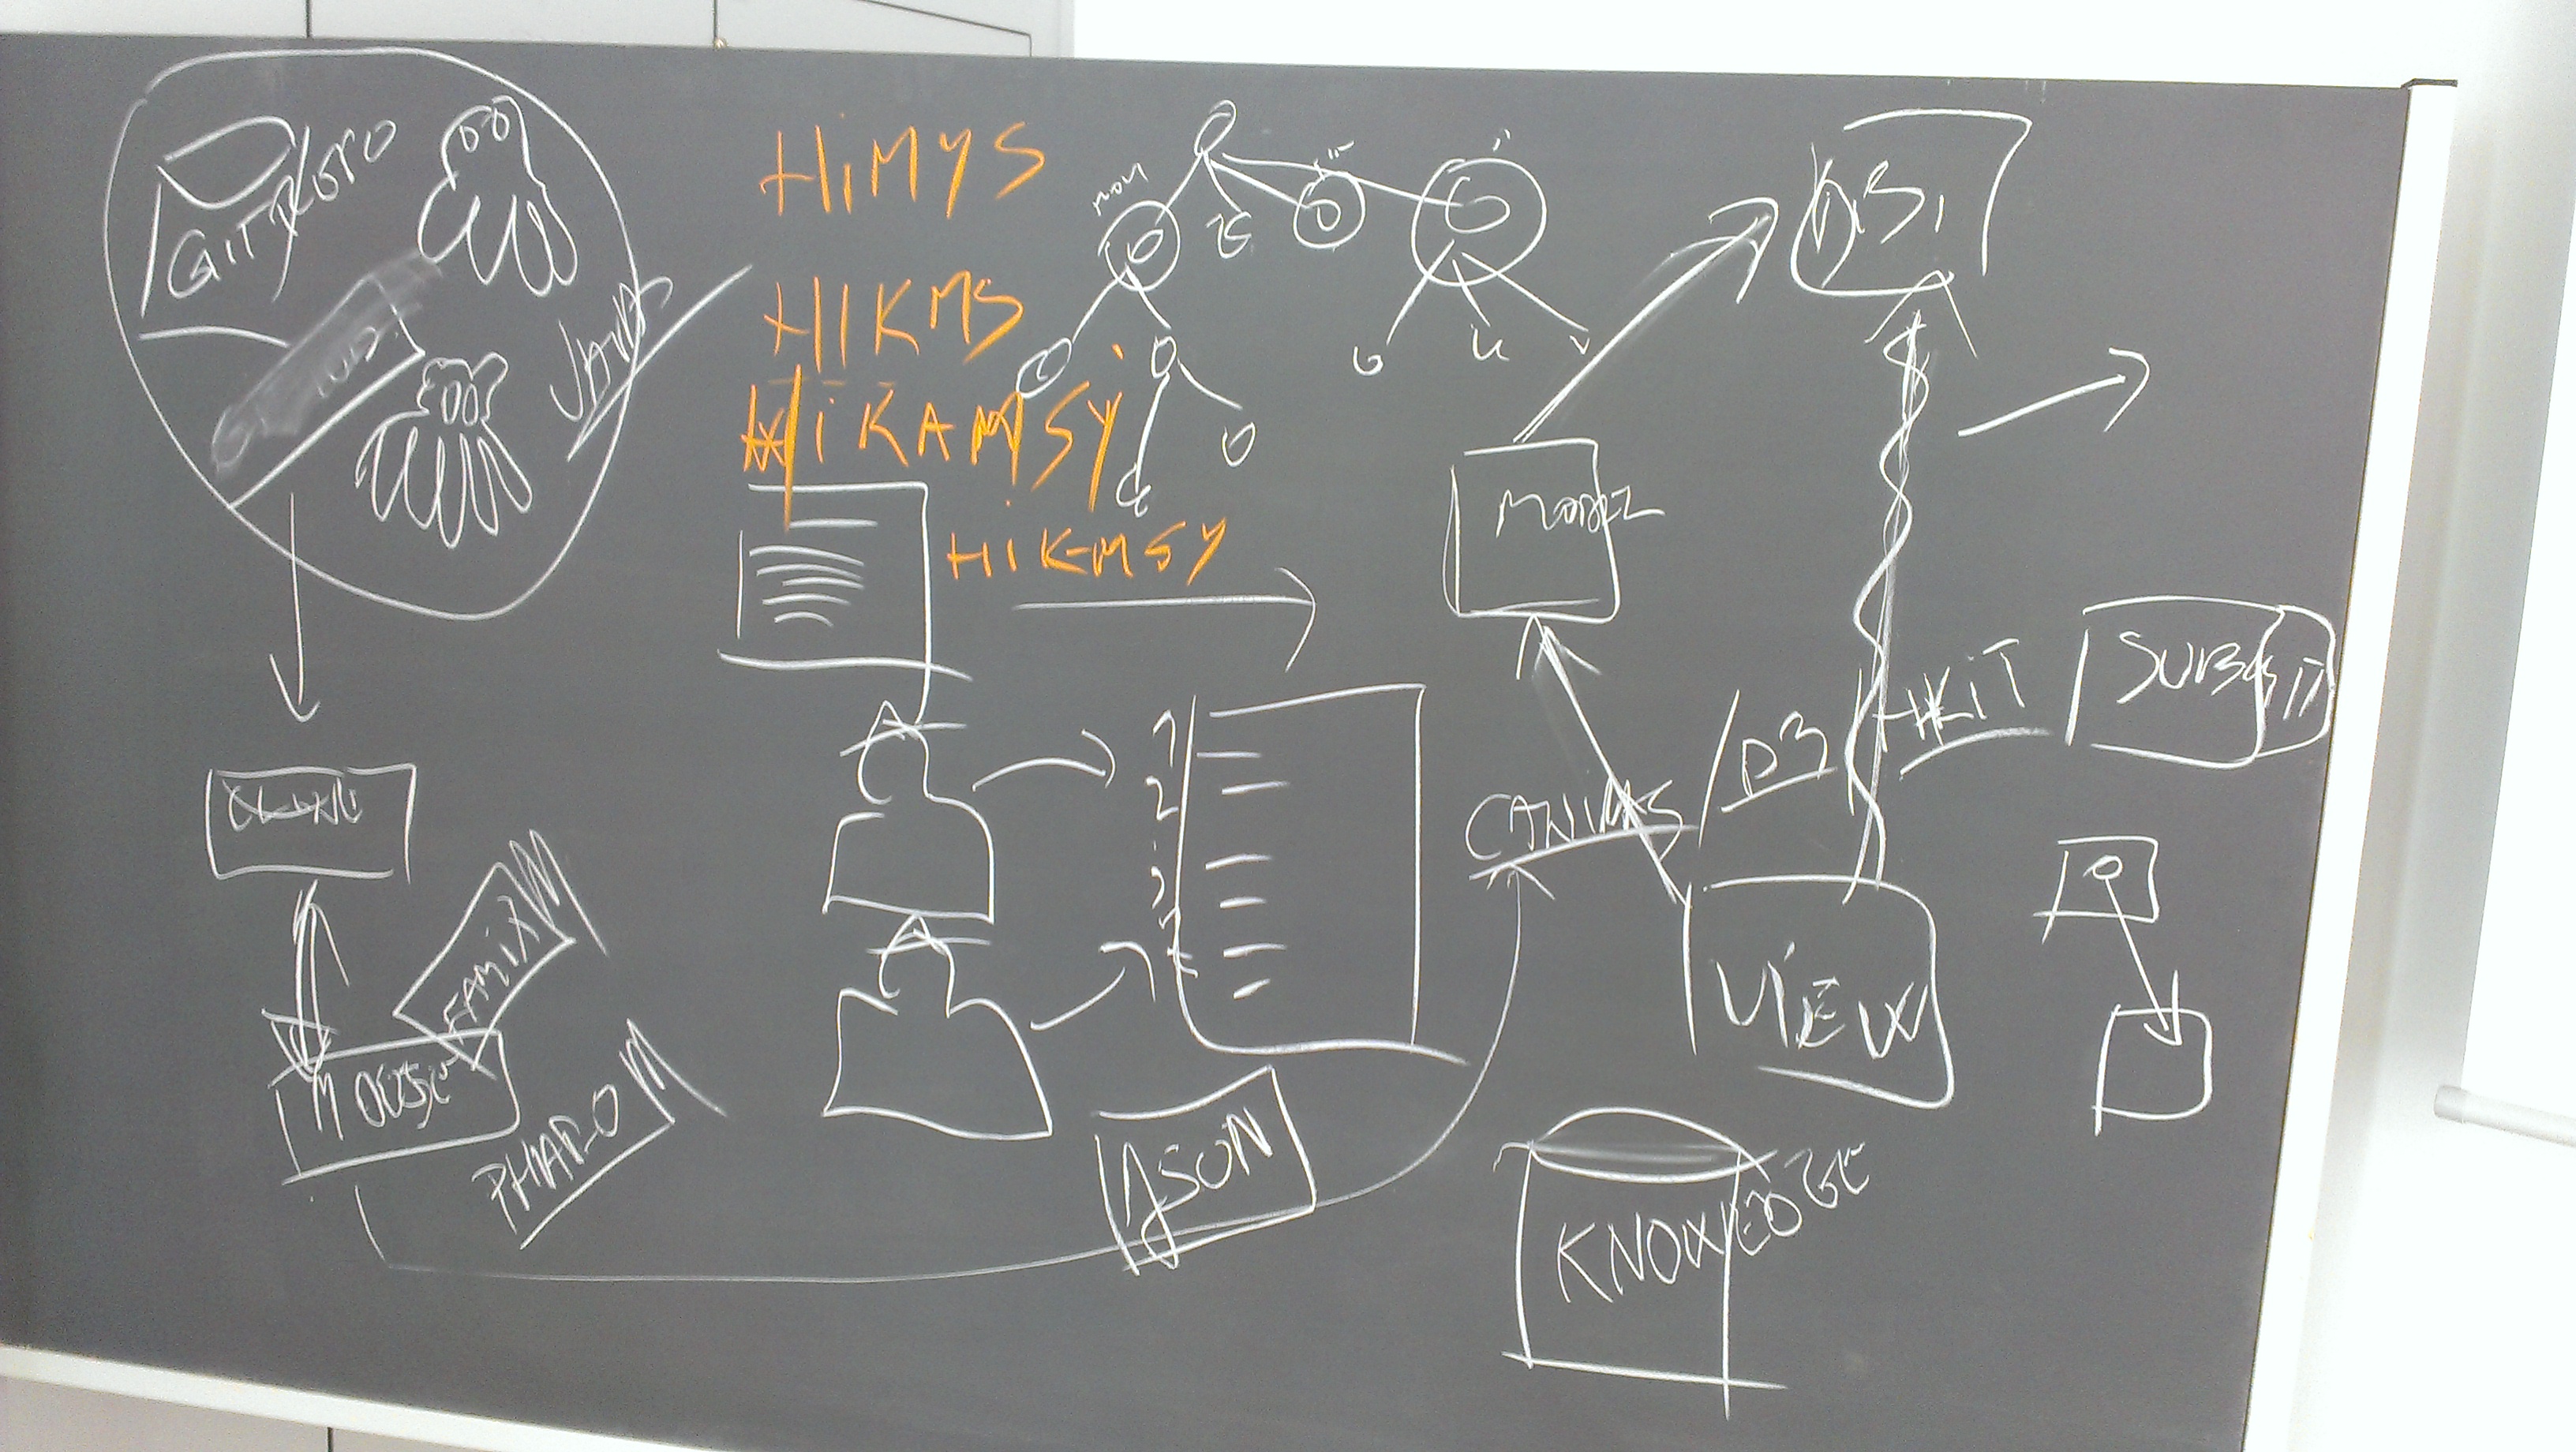 Hik-msy-brainstorming